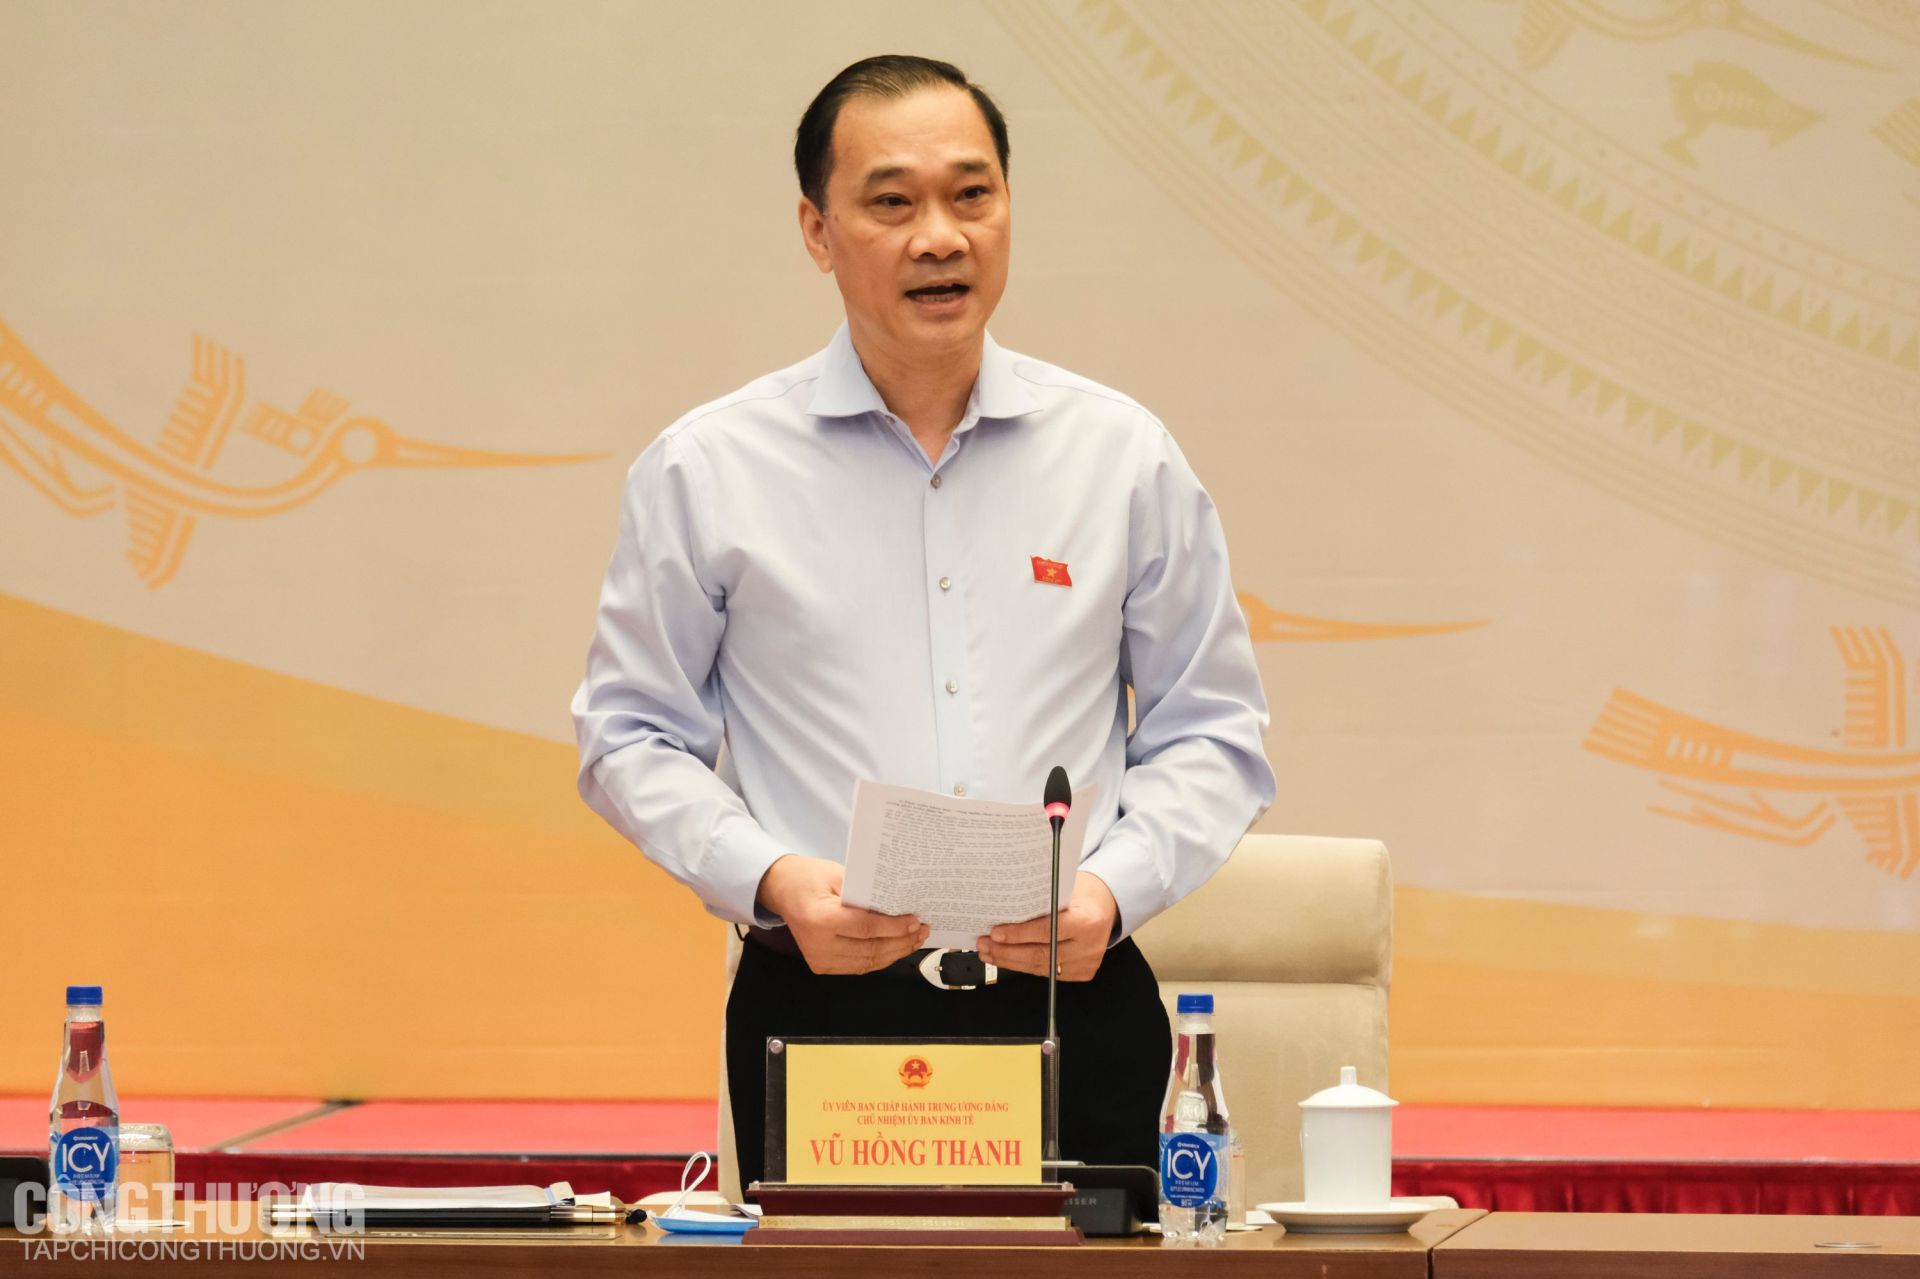 Ông Vũ Hồng Thanh - Ủy viên Trung ương Đảng, Chủ nhiệm Ủy ban Kinh tế Quốc hội phát biểu khai mạc Phiên giải trình